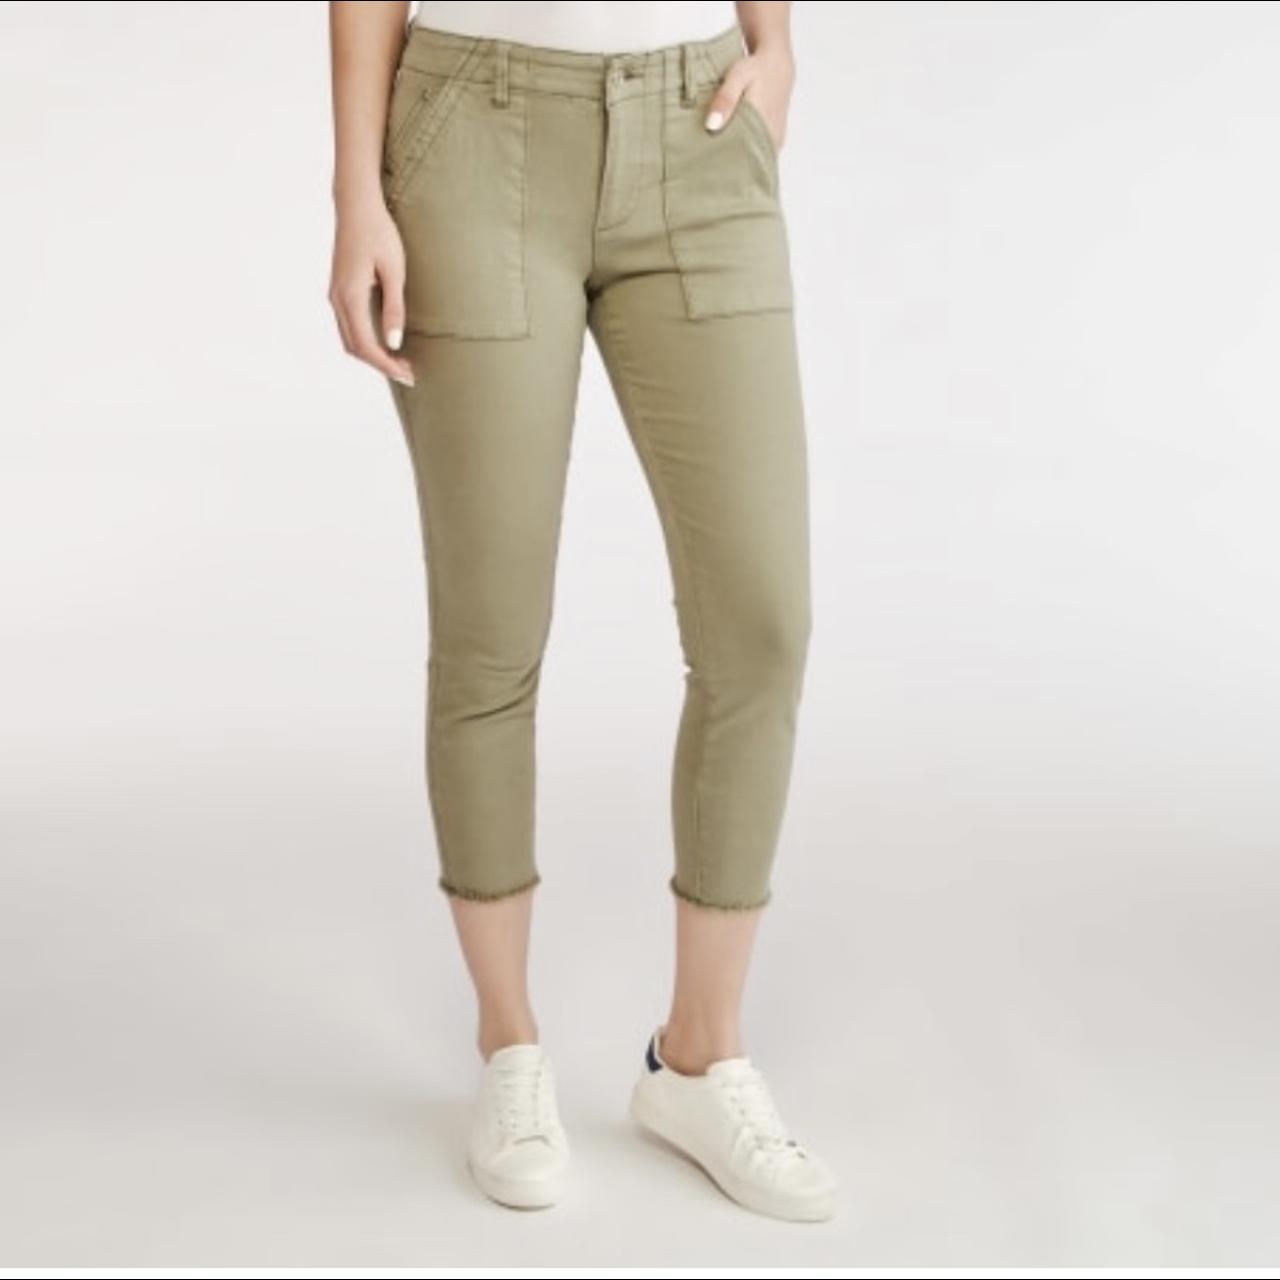 NWT Kensie Jeans Cargo Pants Size 26 Inseam is 26... - Depop